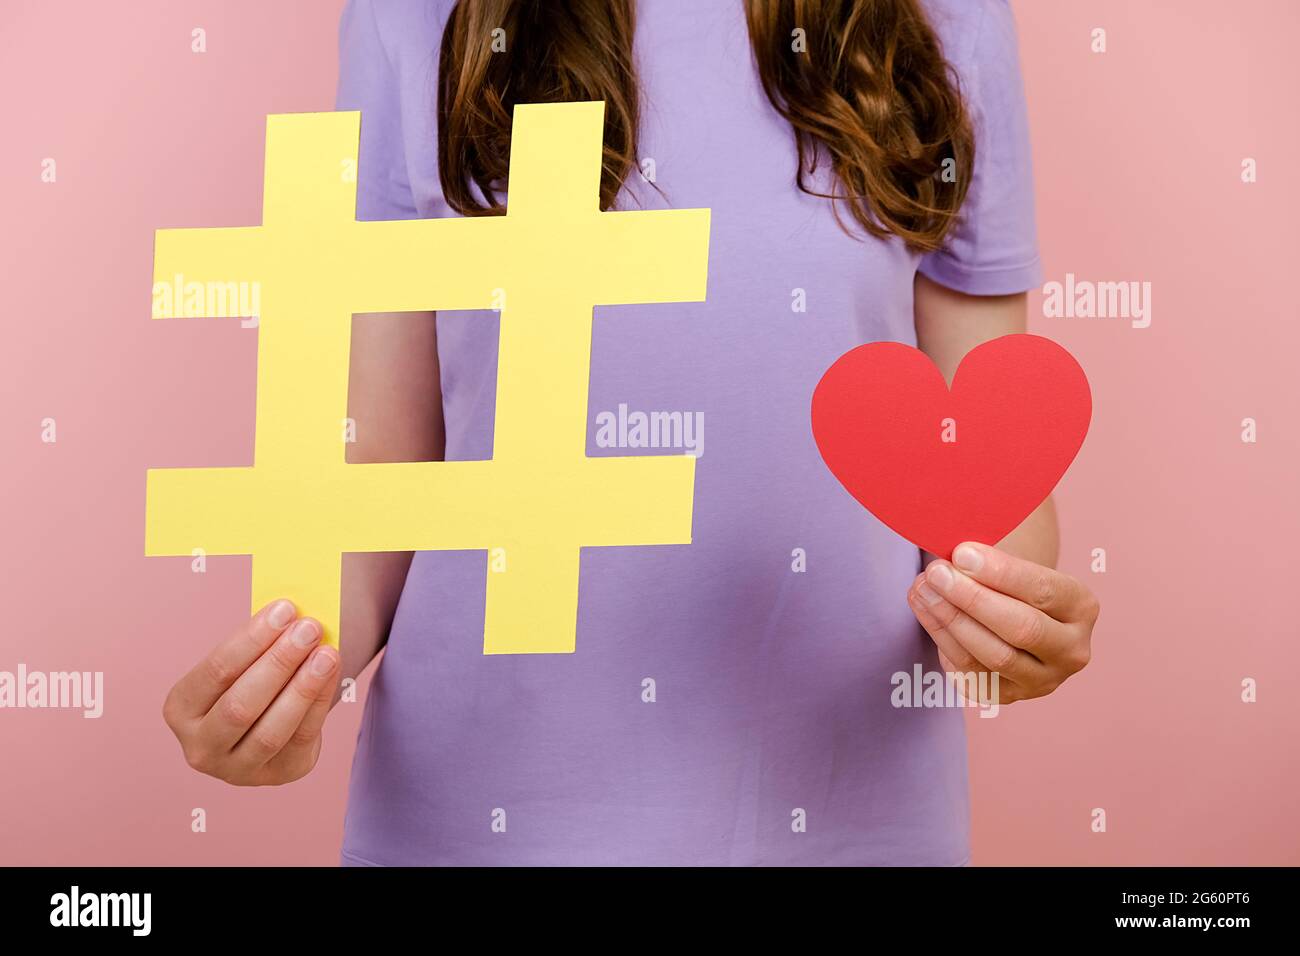 Primo piano filmato ritagliato di giovane donna indossa t-shirt dimostra grande grande segno giallo hashtag e piccolo cuore rosso, in posa isolata sopra la parete rosa Foto Stock